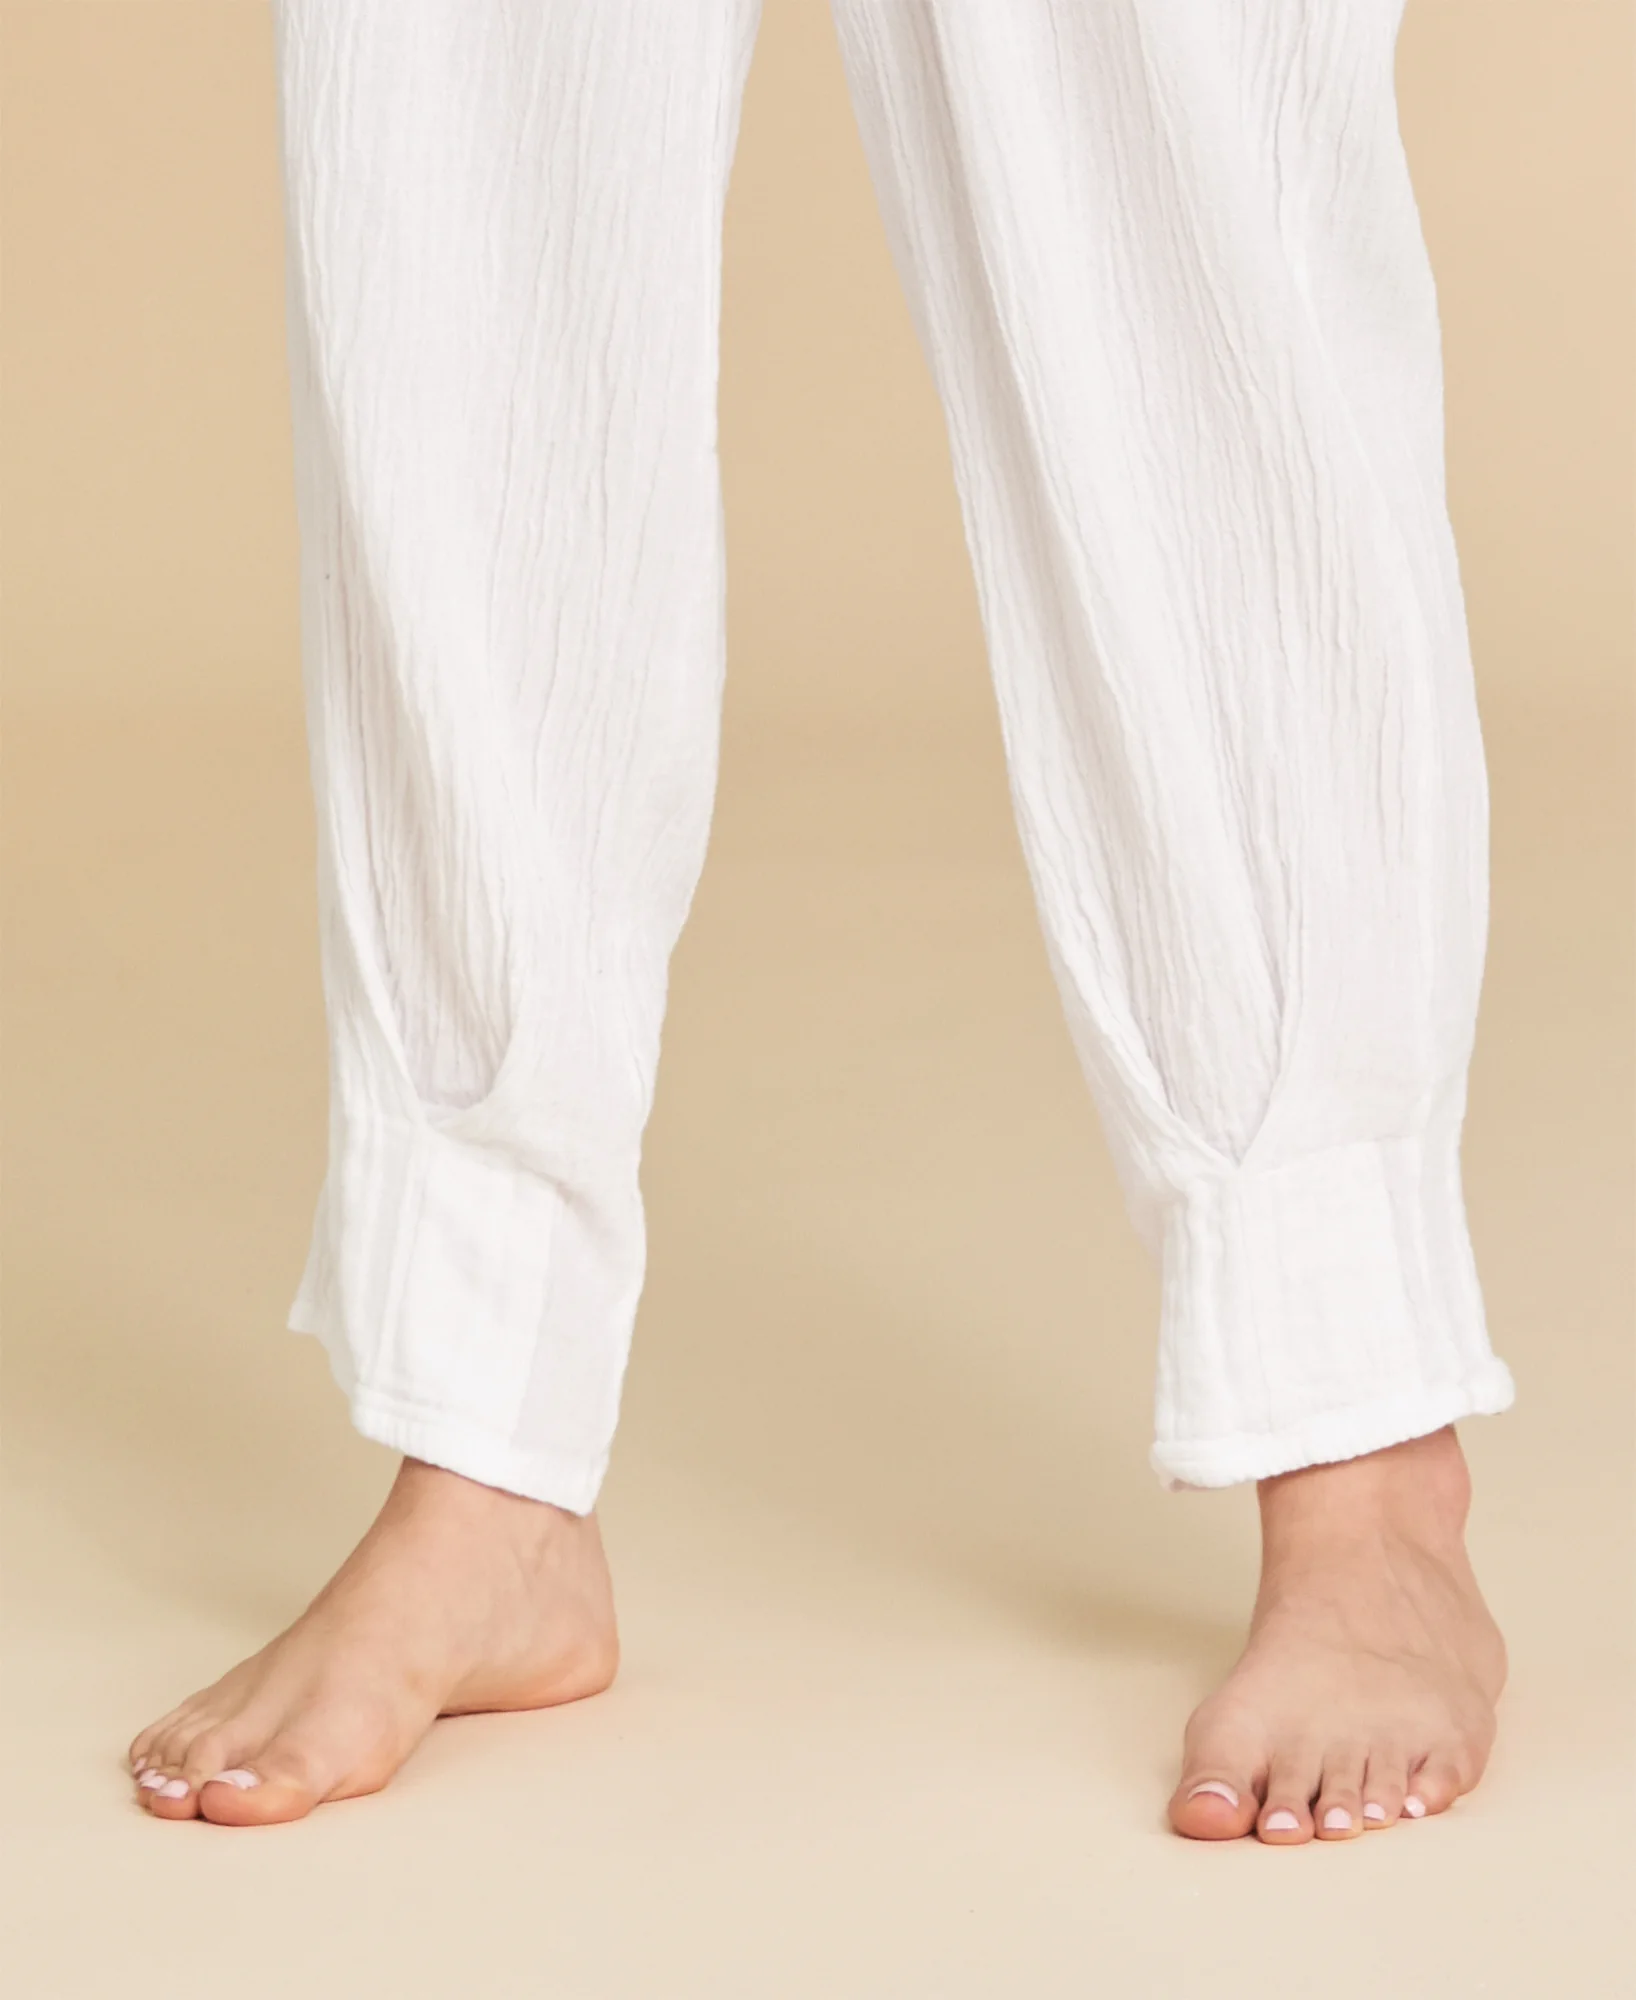 Pantalón tipo harem de algodón Ibiza color blanco